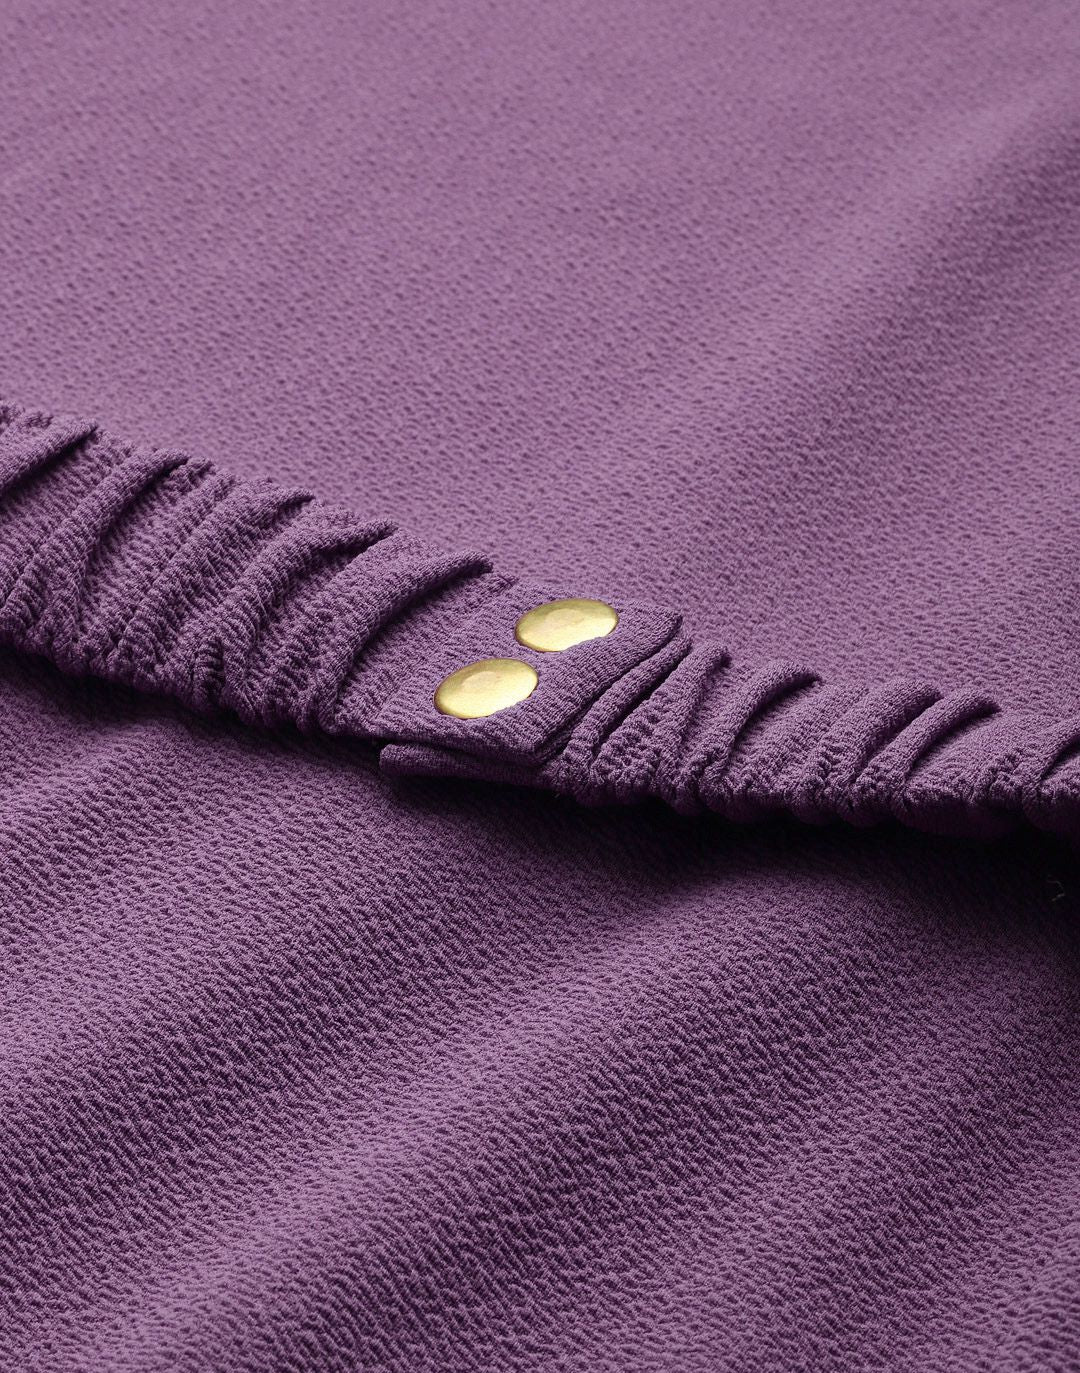 Lavender Belted Drop Shoulder Midi Dress